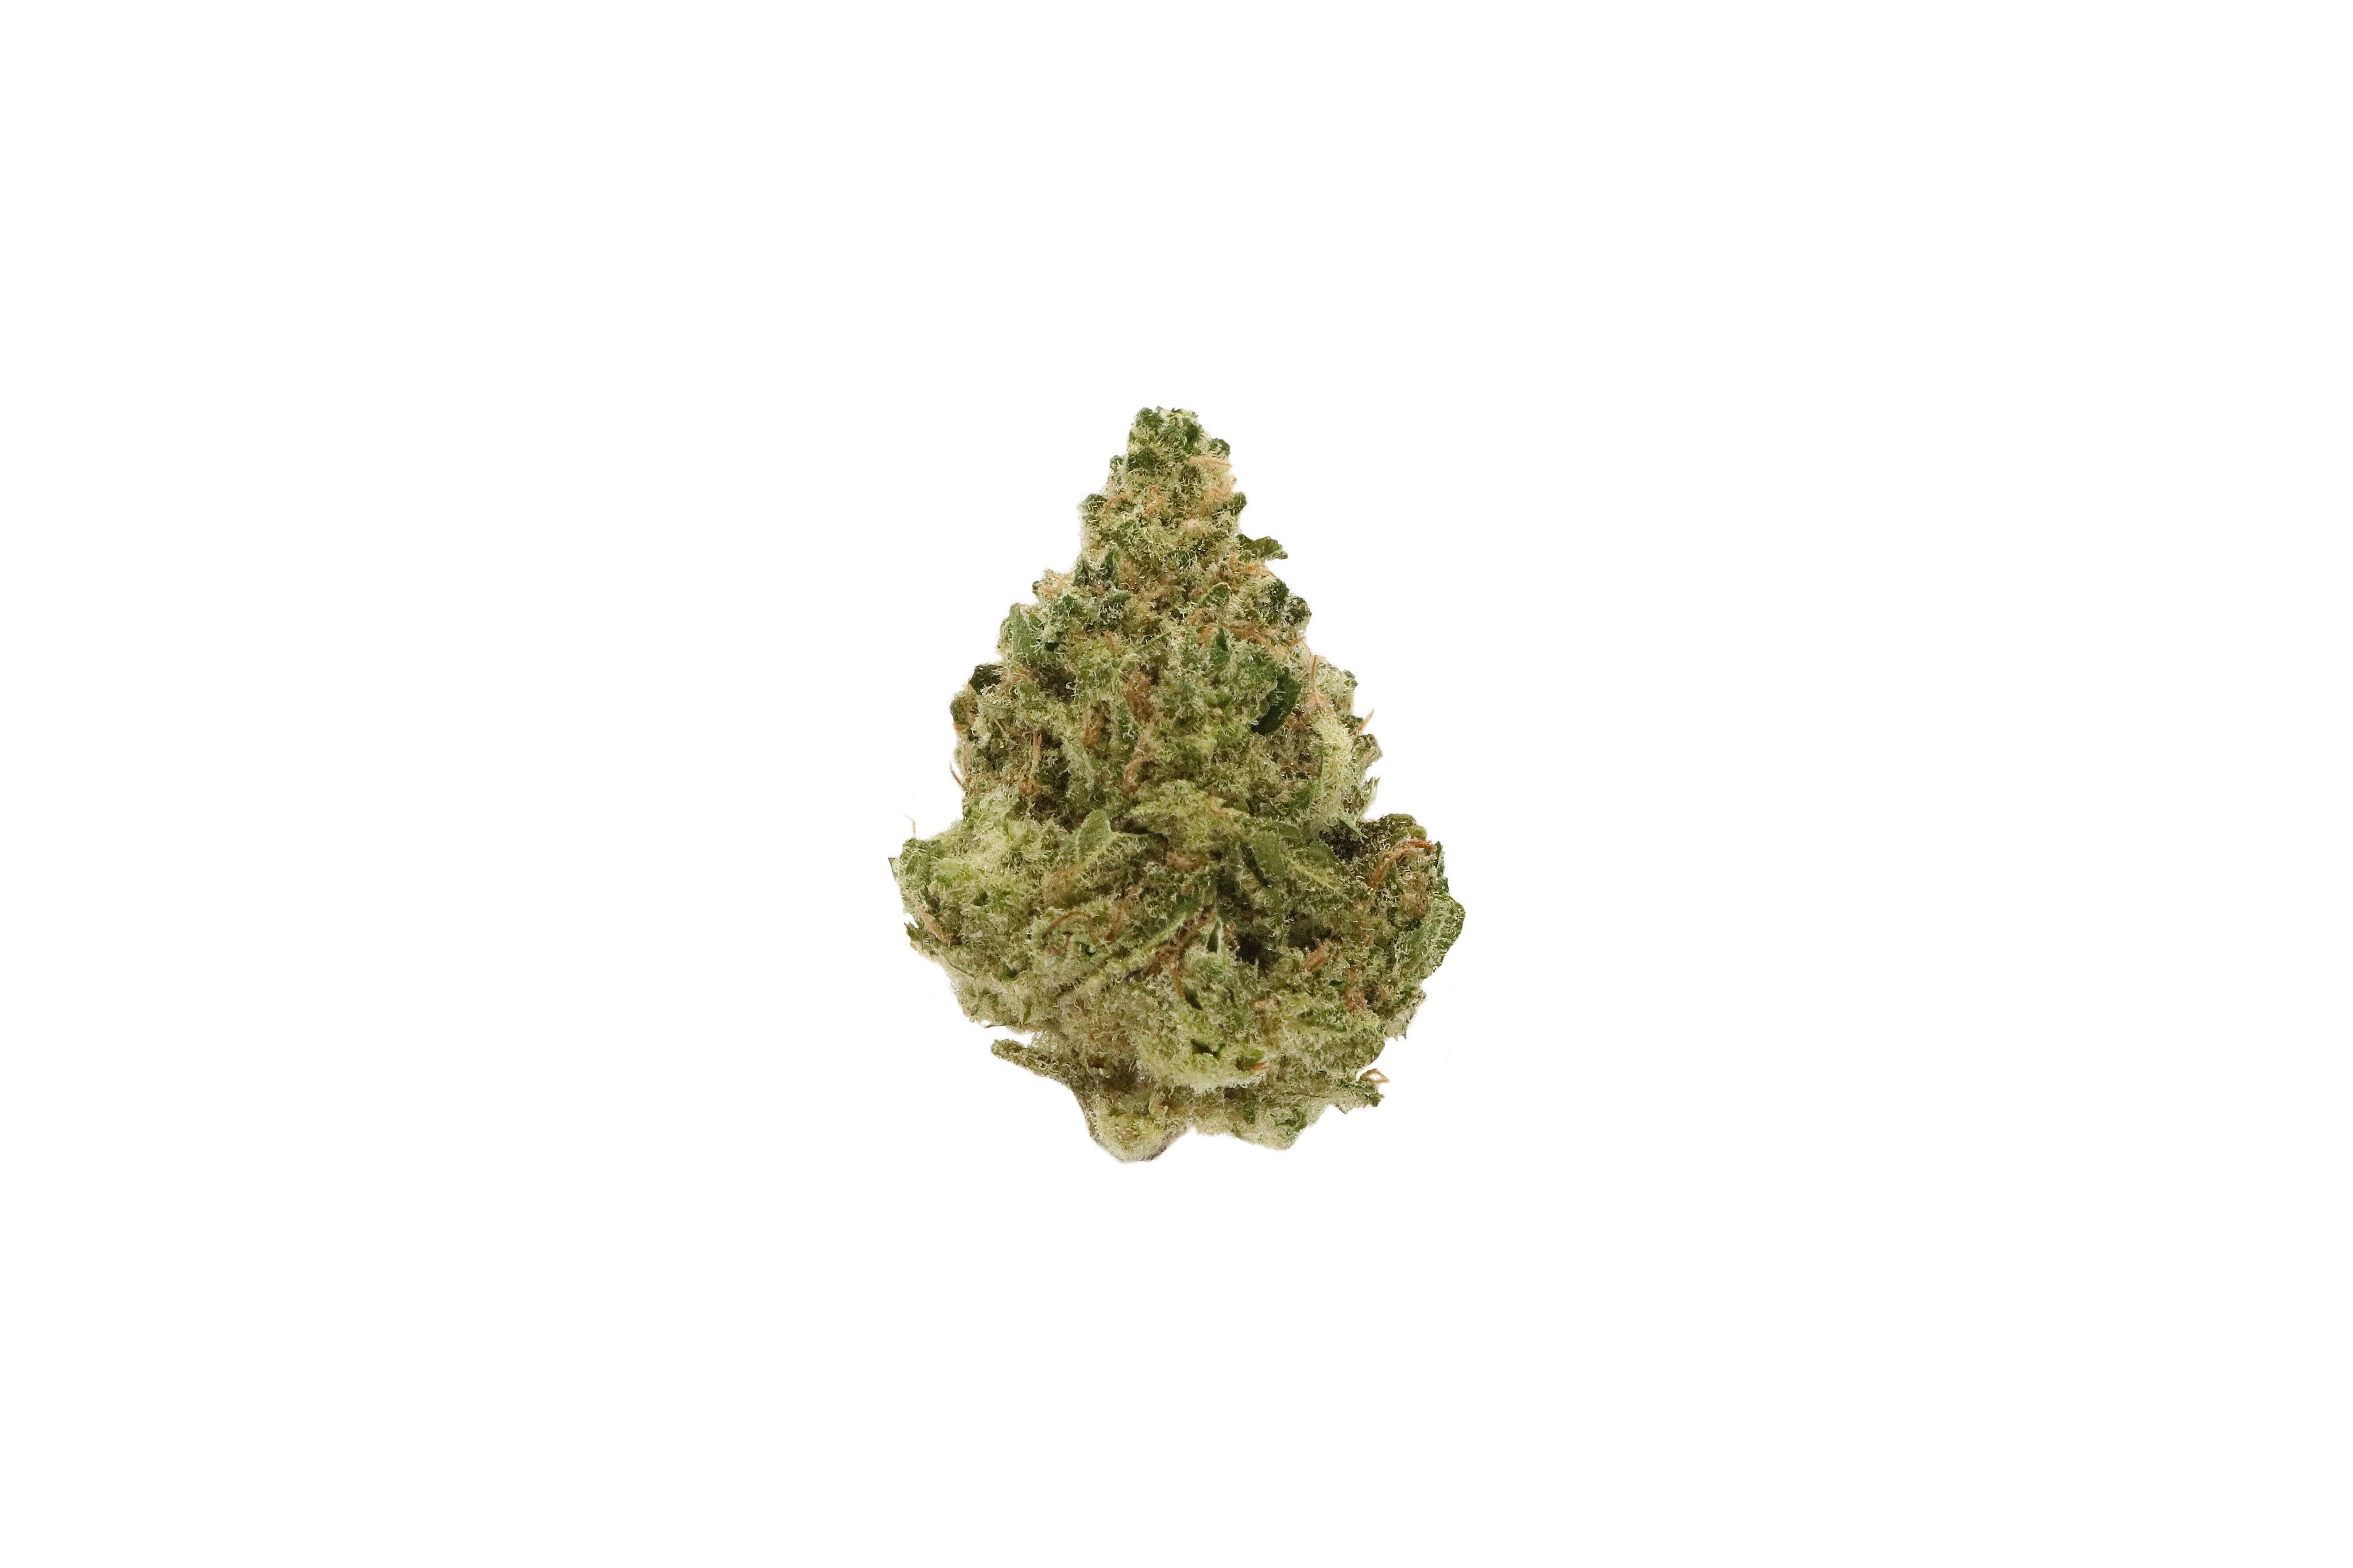 marijuana-dispensaries-221-e-6th-st-23105-tucson-sonoran-cooler